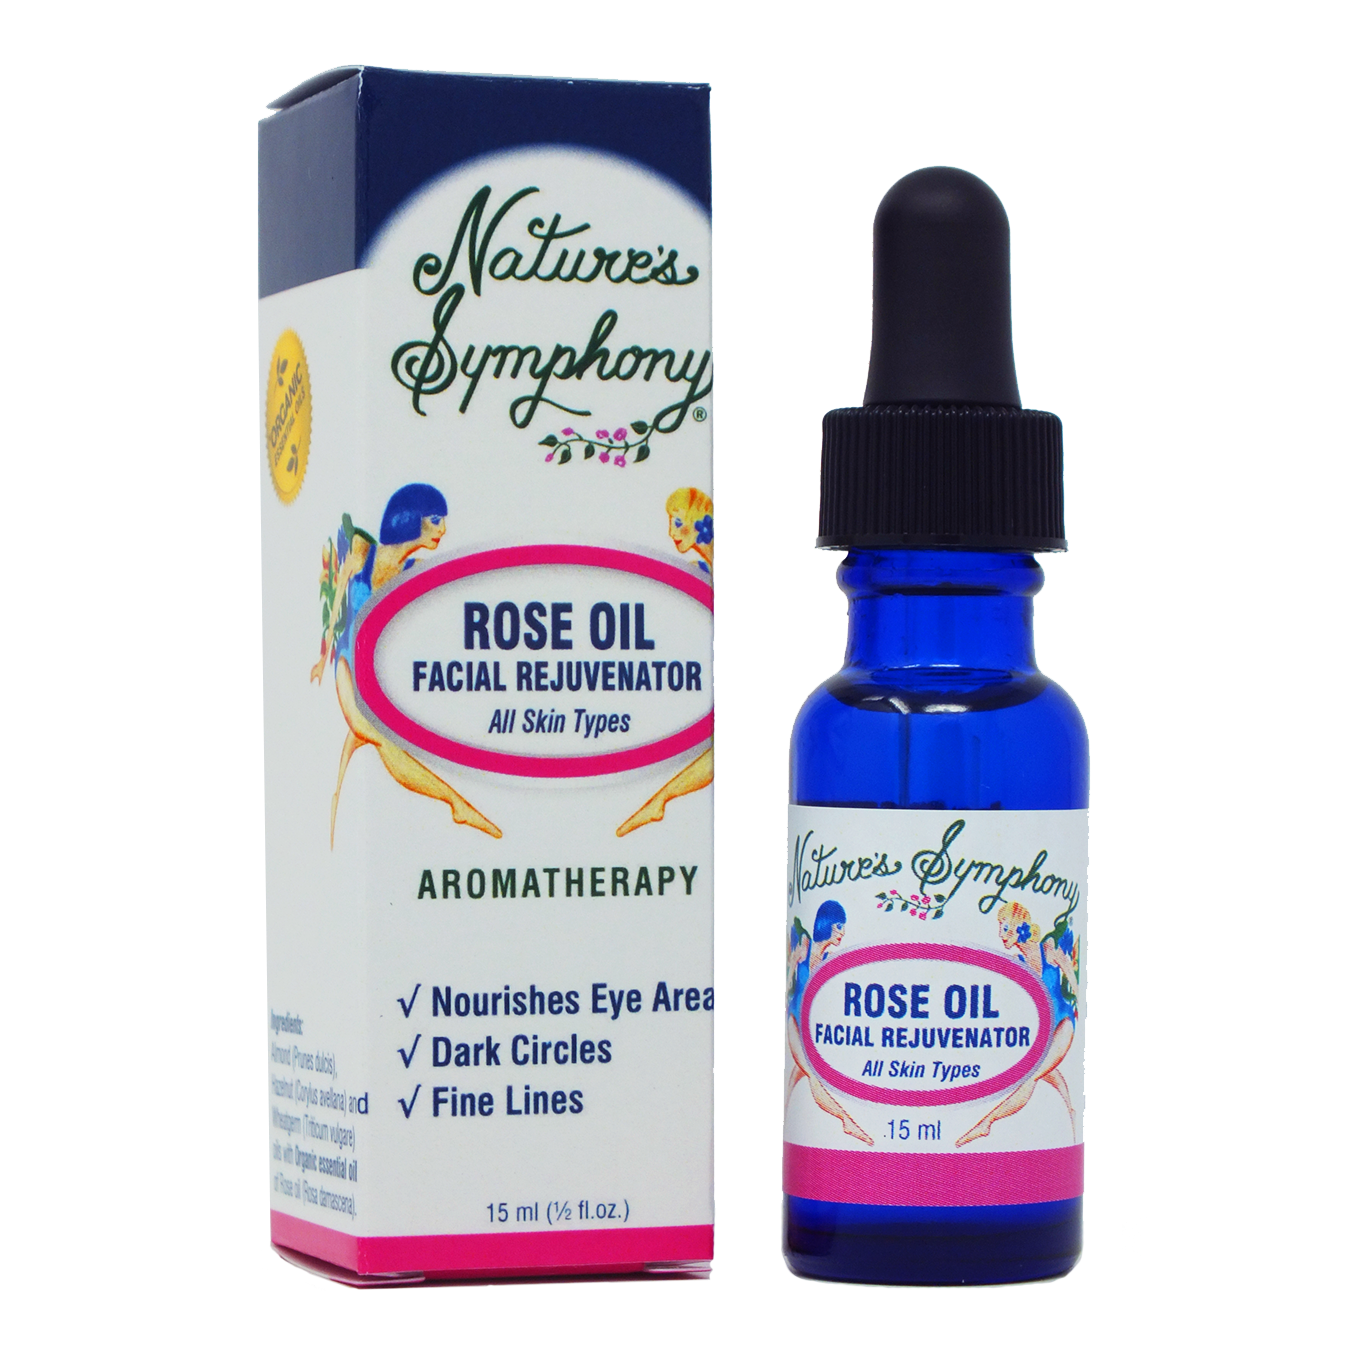 Rose Oil/Rejuvenator, All skin types - 15ml